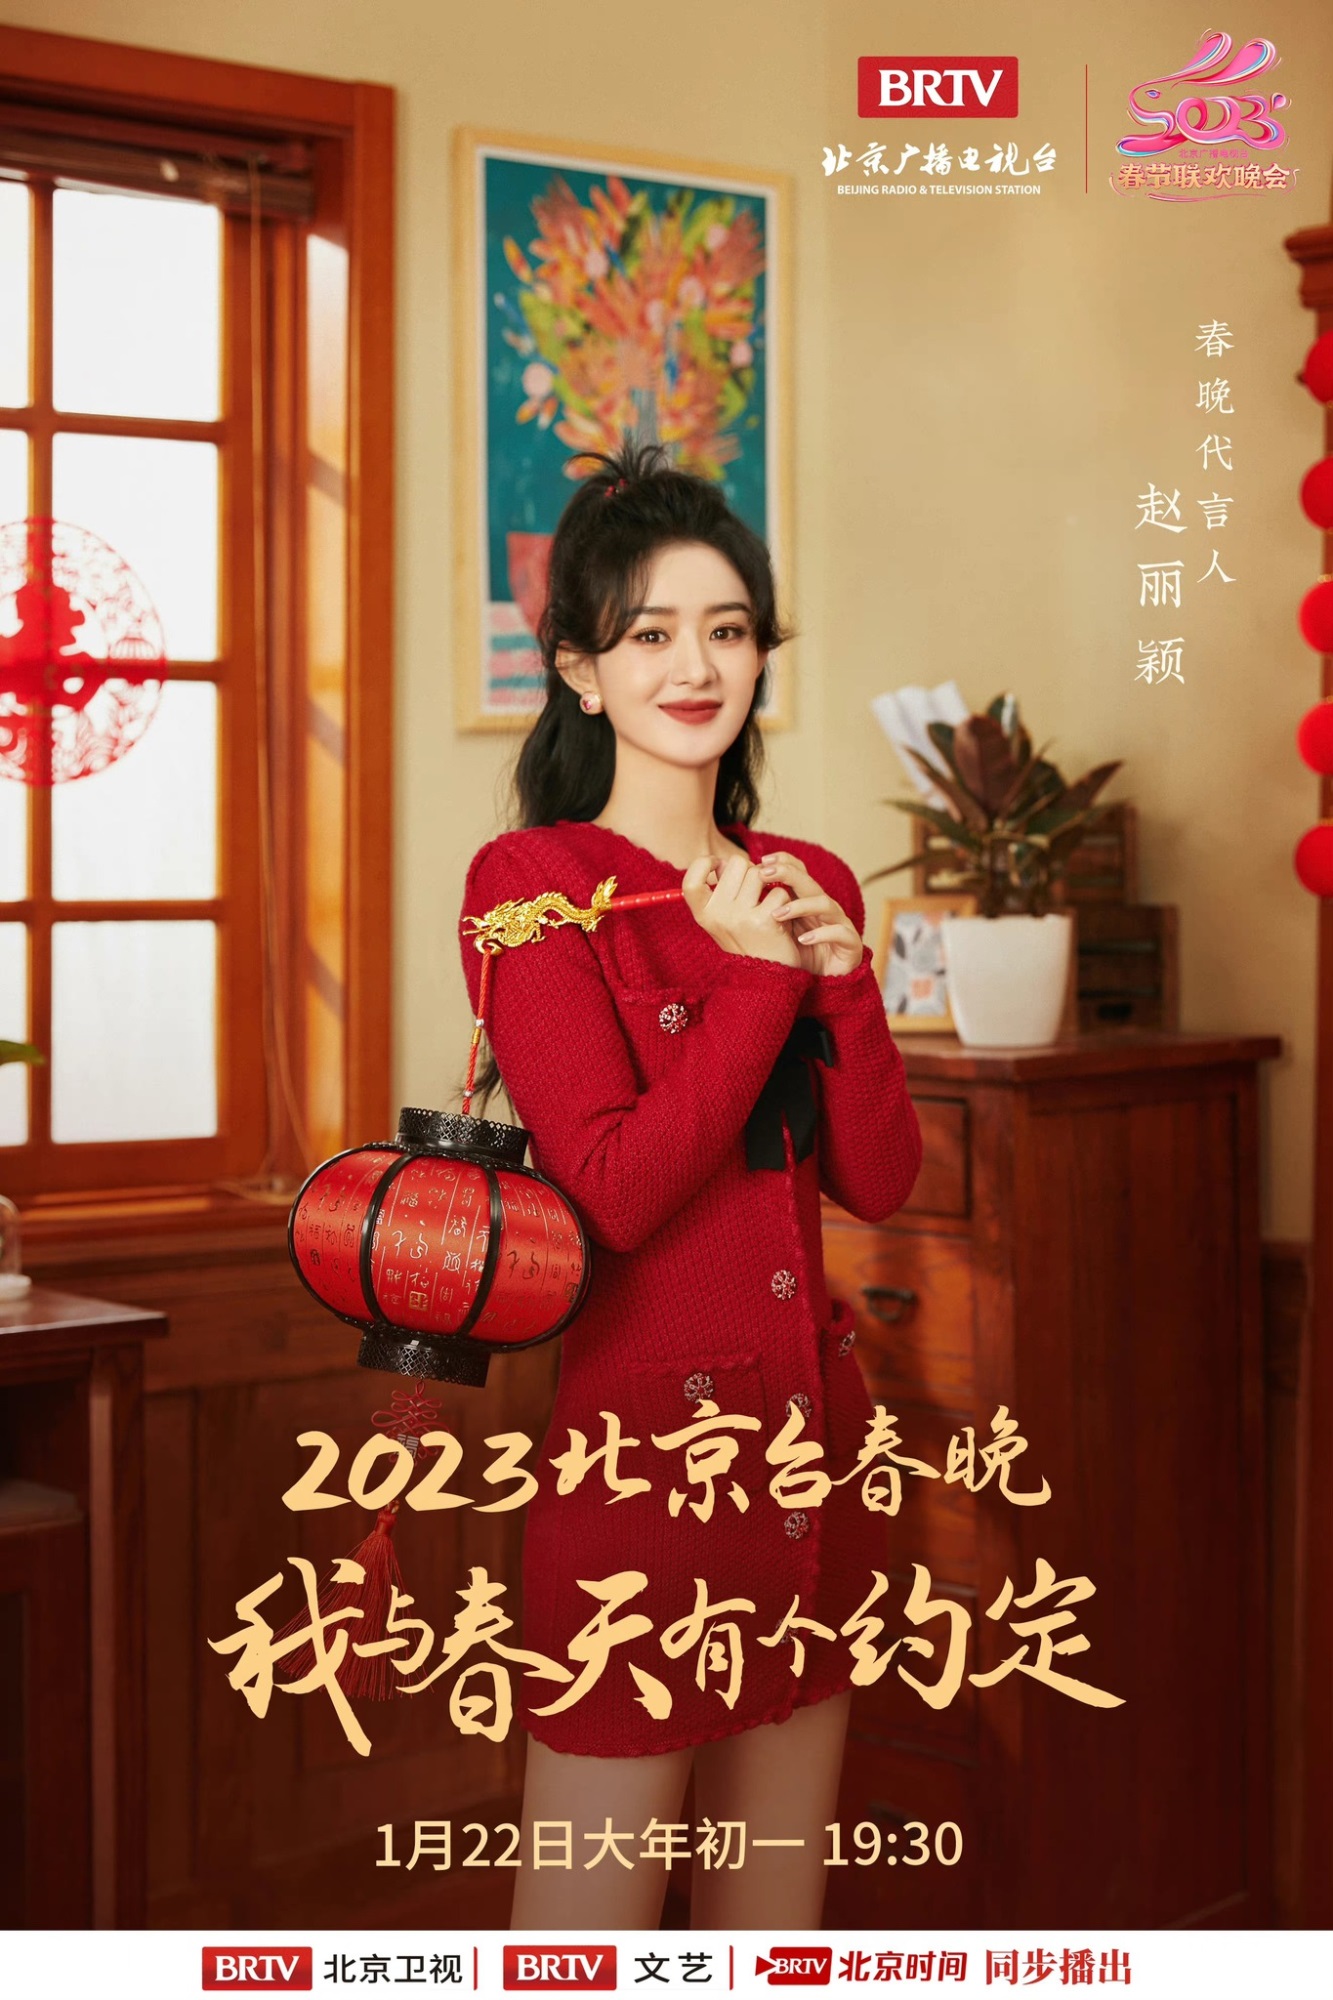 Triệu Lệ Dĩnh khoe nhan sắc thăng hạng, xinh đẹp rạng ngời trong loạt ảnh mới cho Đêm Hội Mùa Xuân Đài Bắc Kinh năm 2023 - Ảnh 2